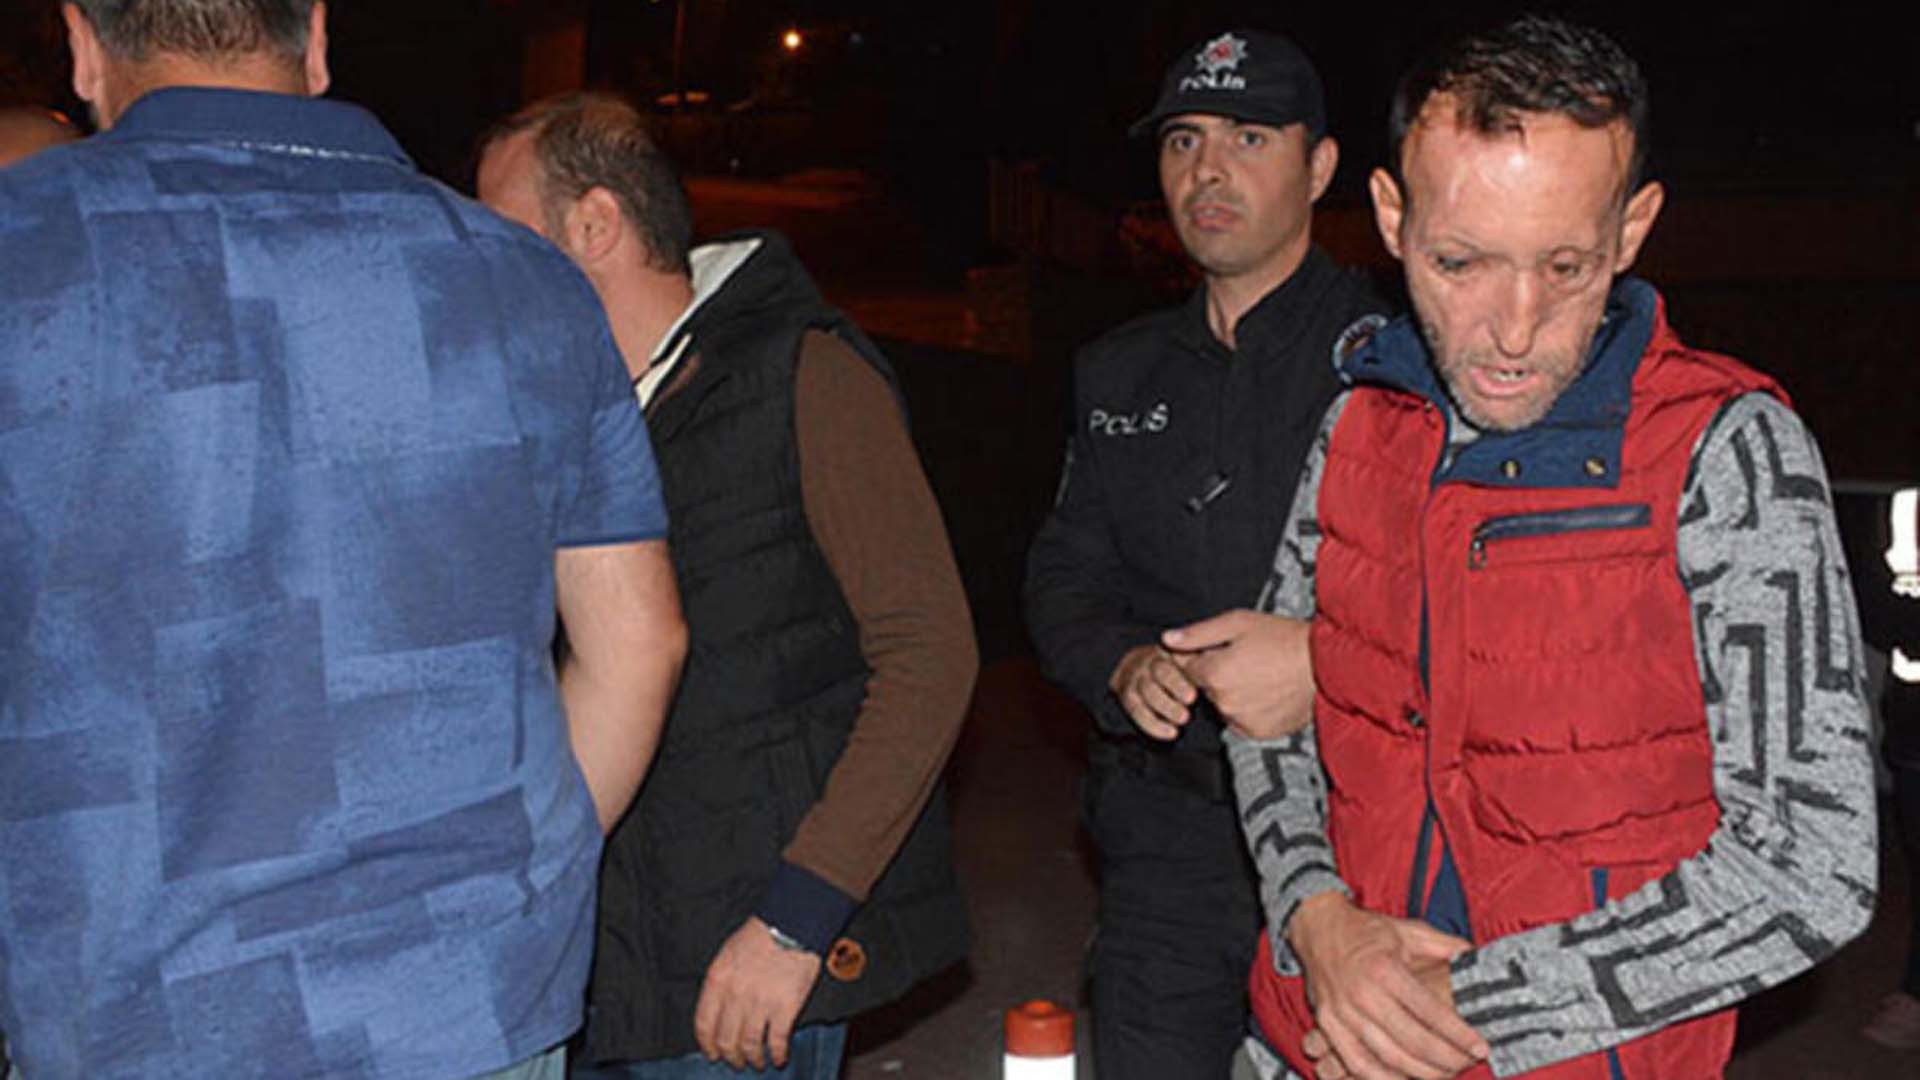 Türkiye’de ilk kez yüz nakli gerçekleştirilen Recep Sert gözaltına alındı! 